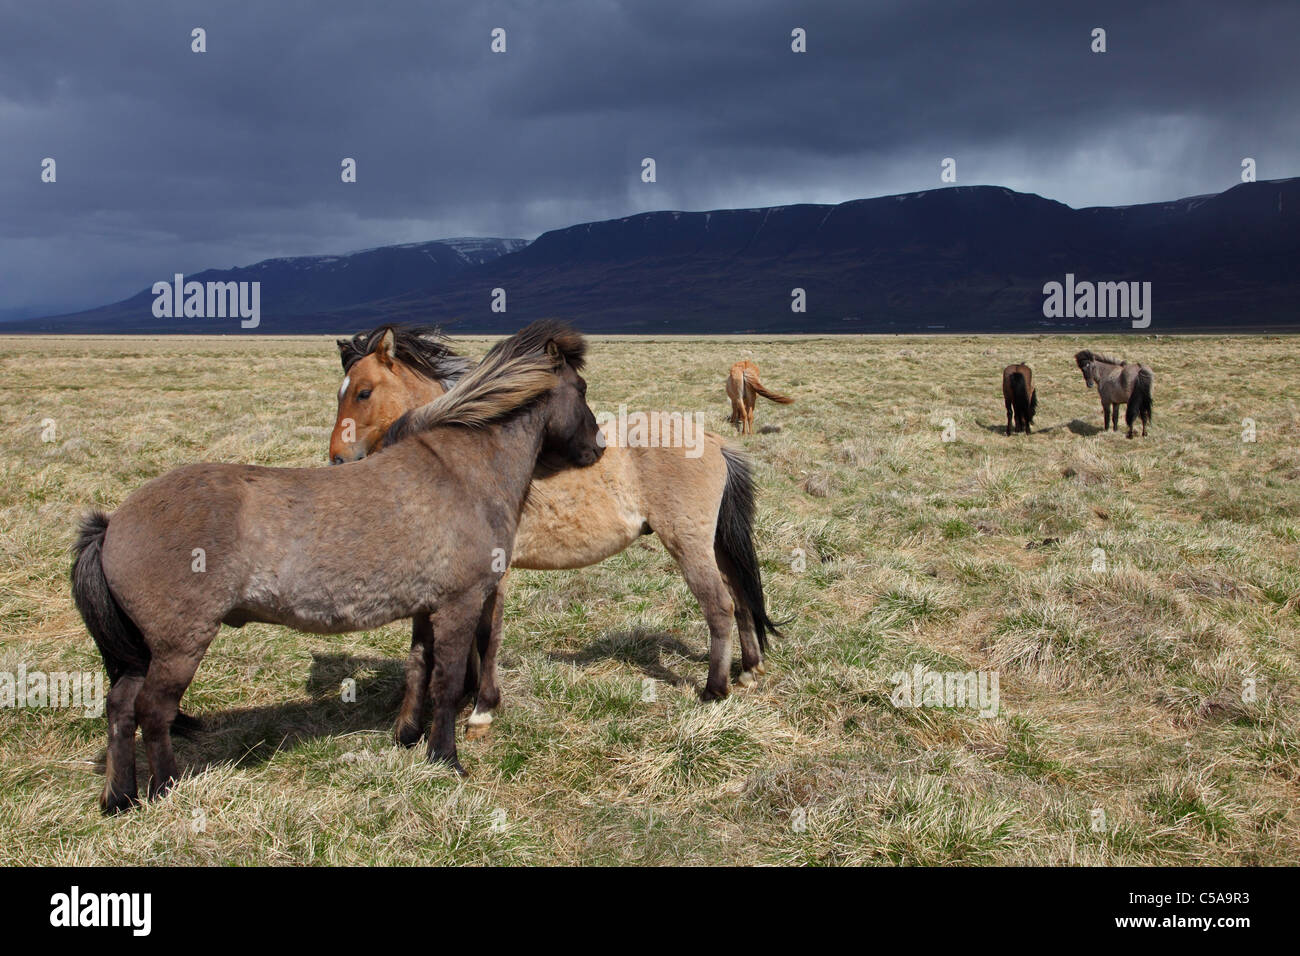 Islandic horses, Iceland pony (Equus przewalskii f. caballus) and mountains. Iceland, Europe Stock Photo